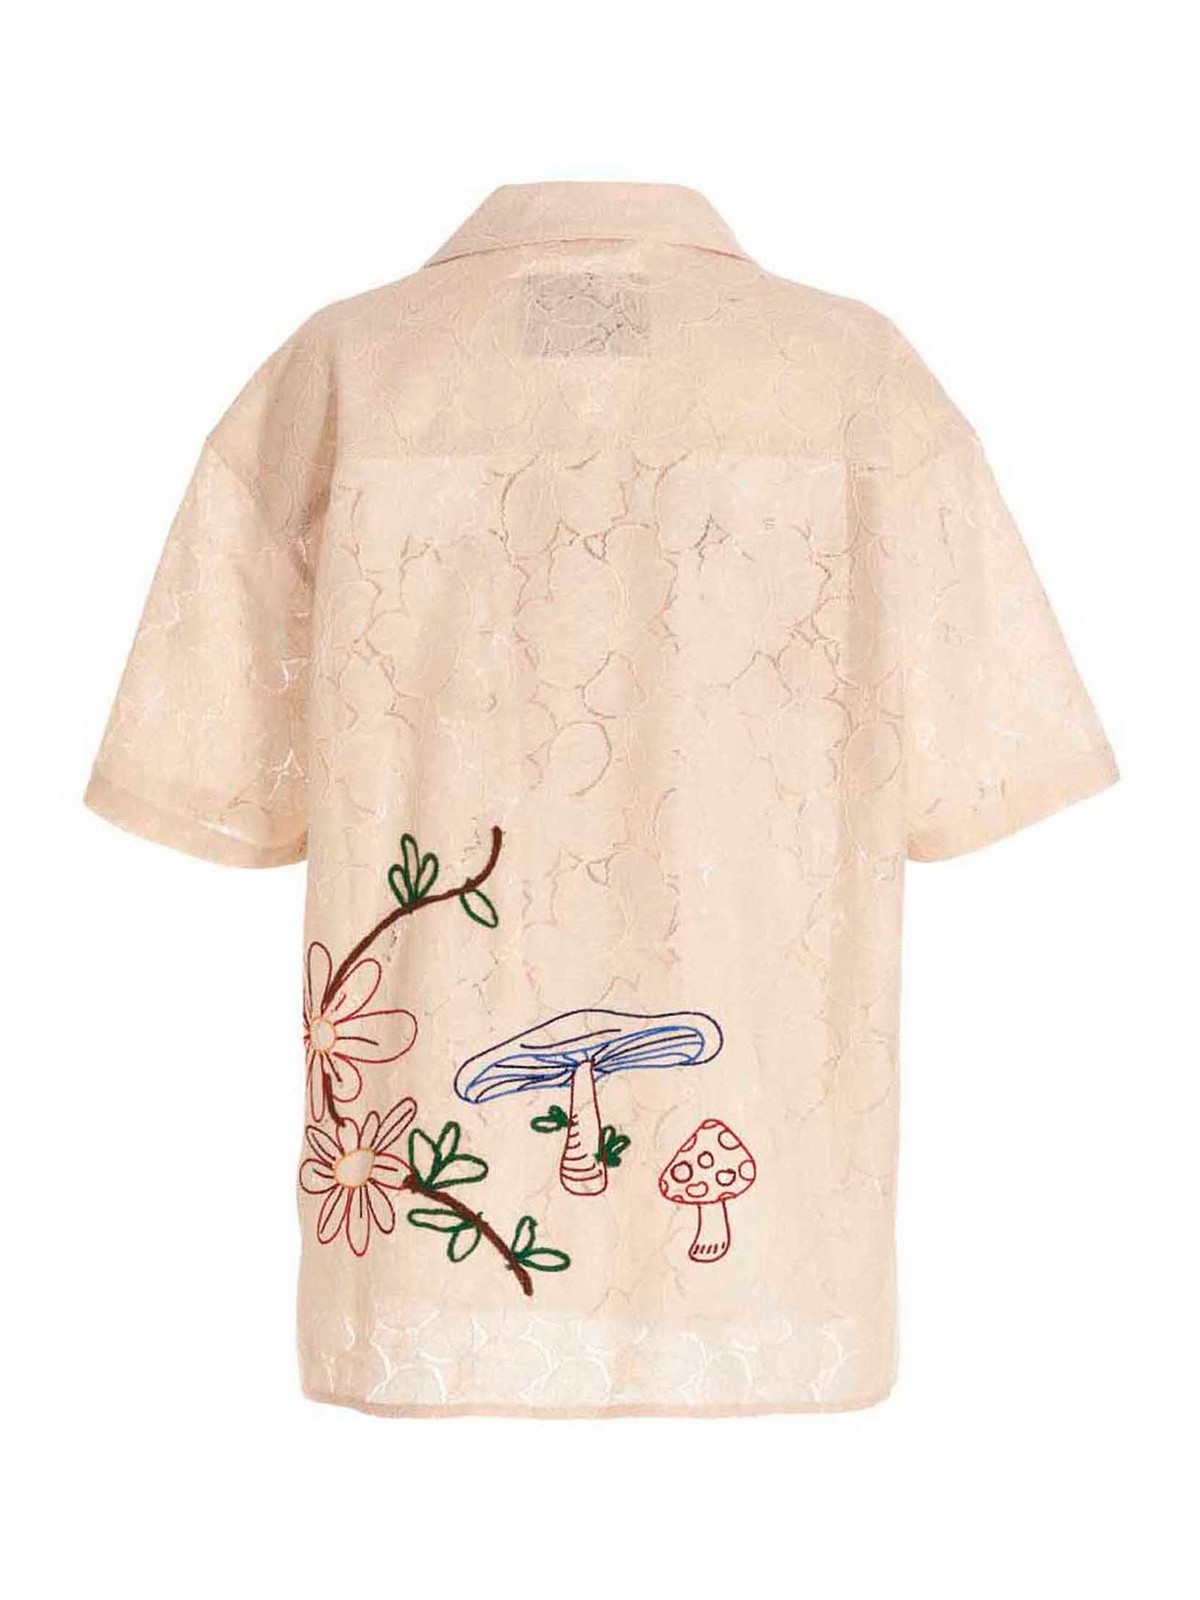 Flower Mushroom shirt